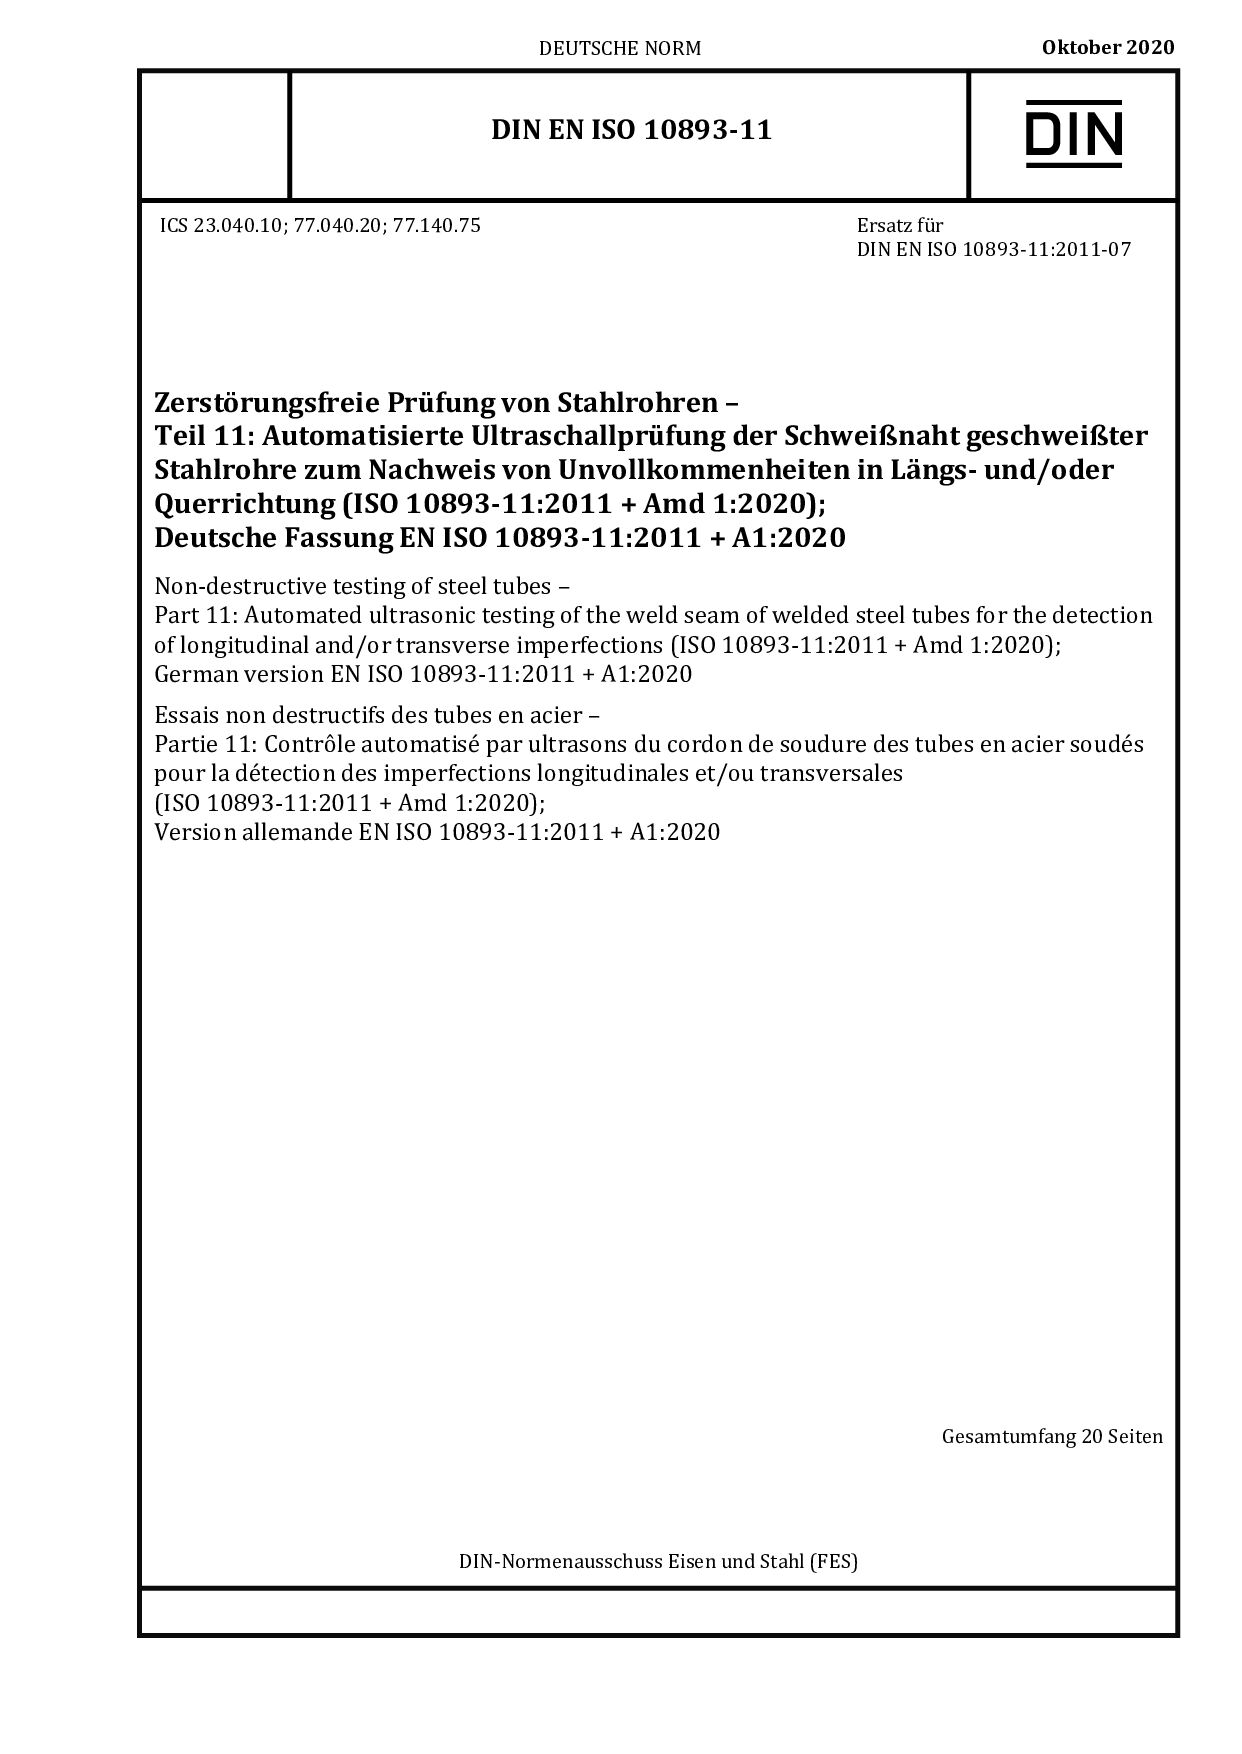 DIN EN ISO 10893-11:2020-10封面图